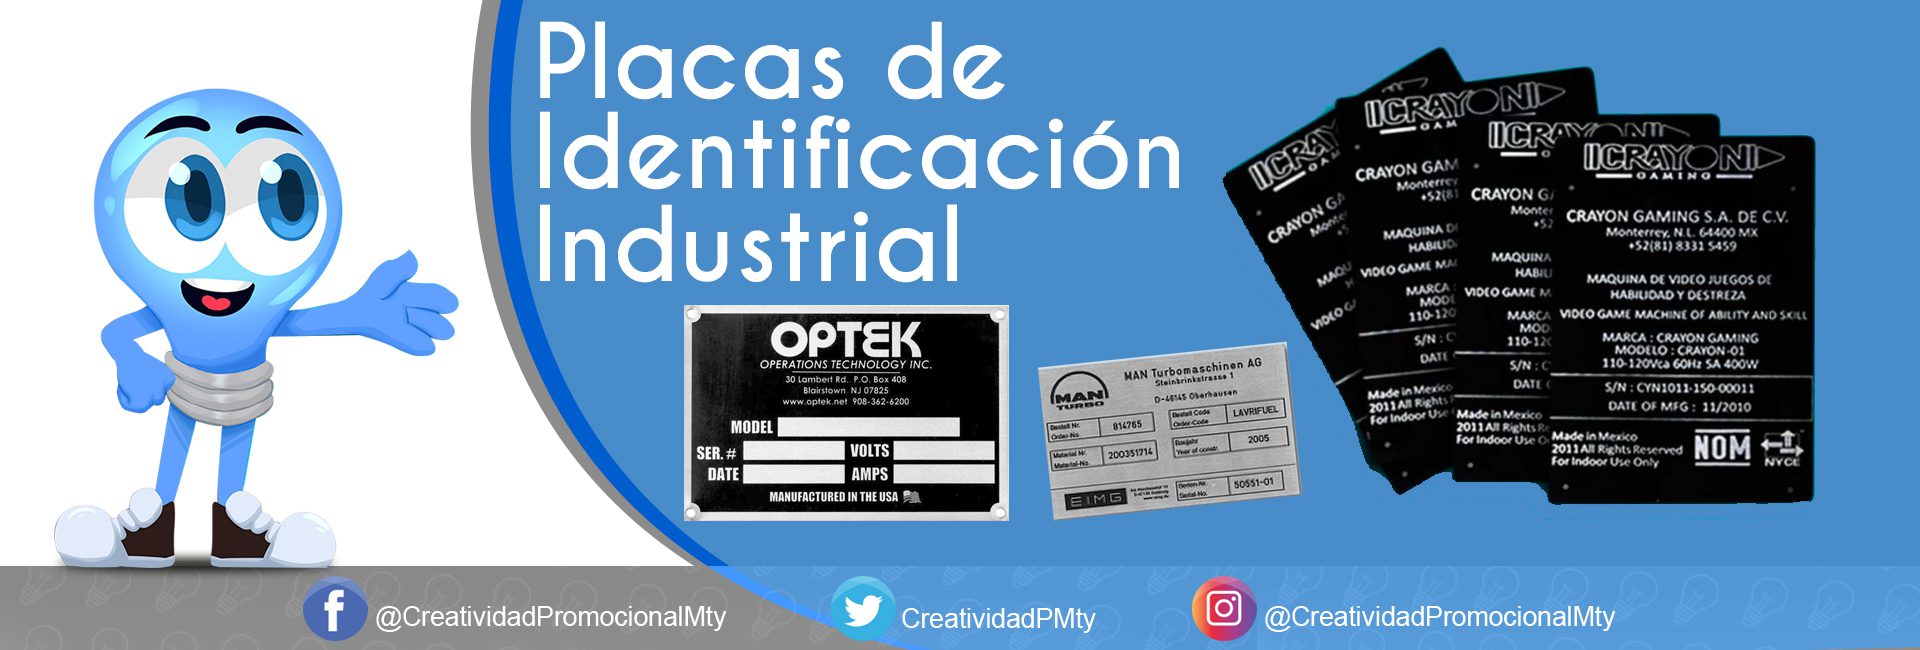 placa de identificacion industrial - Creatividad Promocional de Monterrey